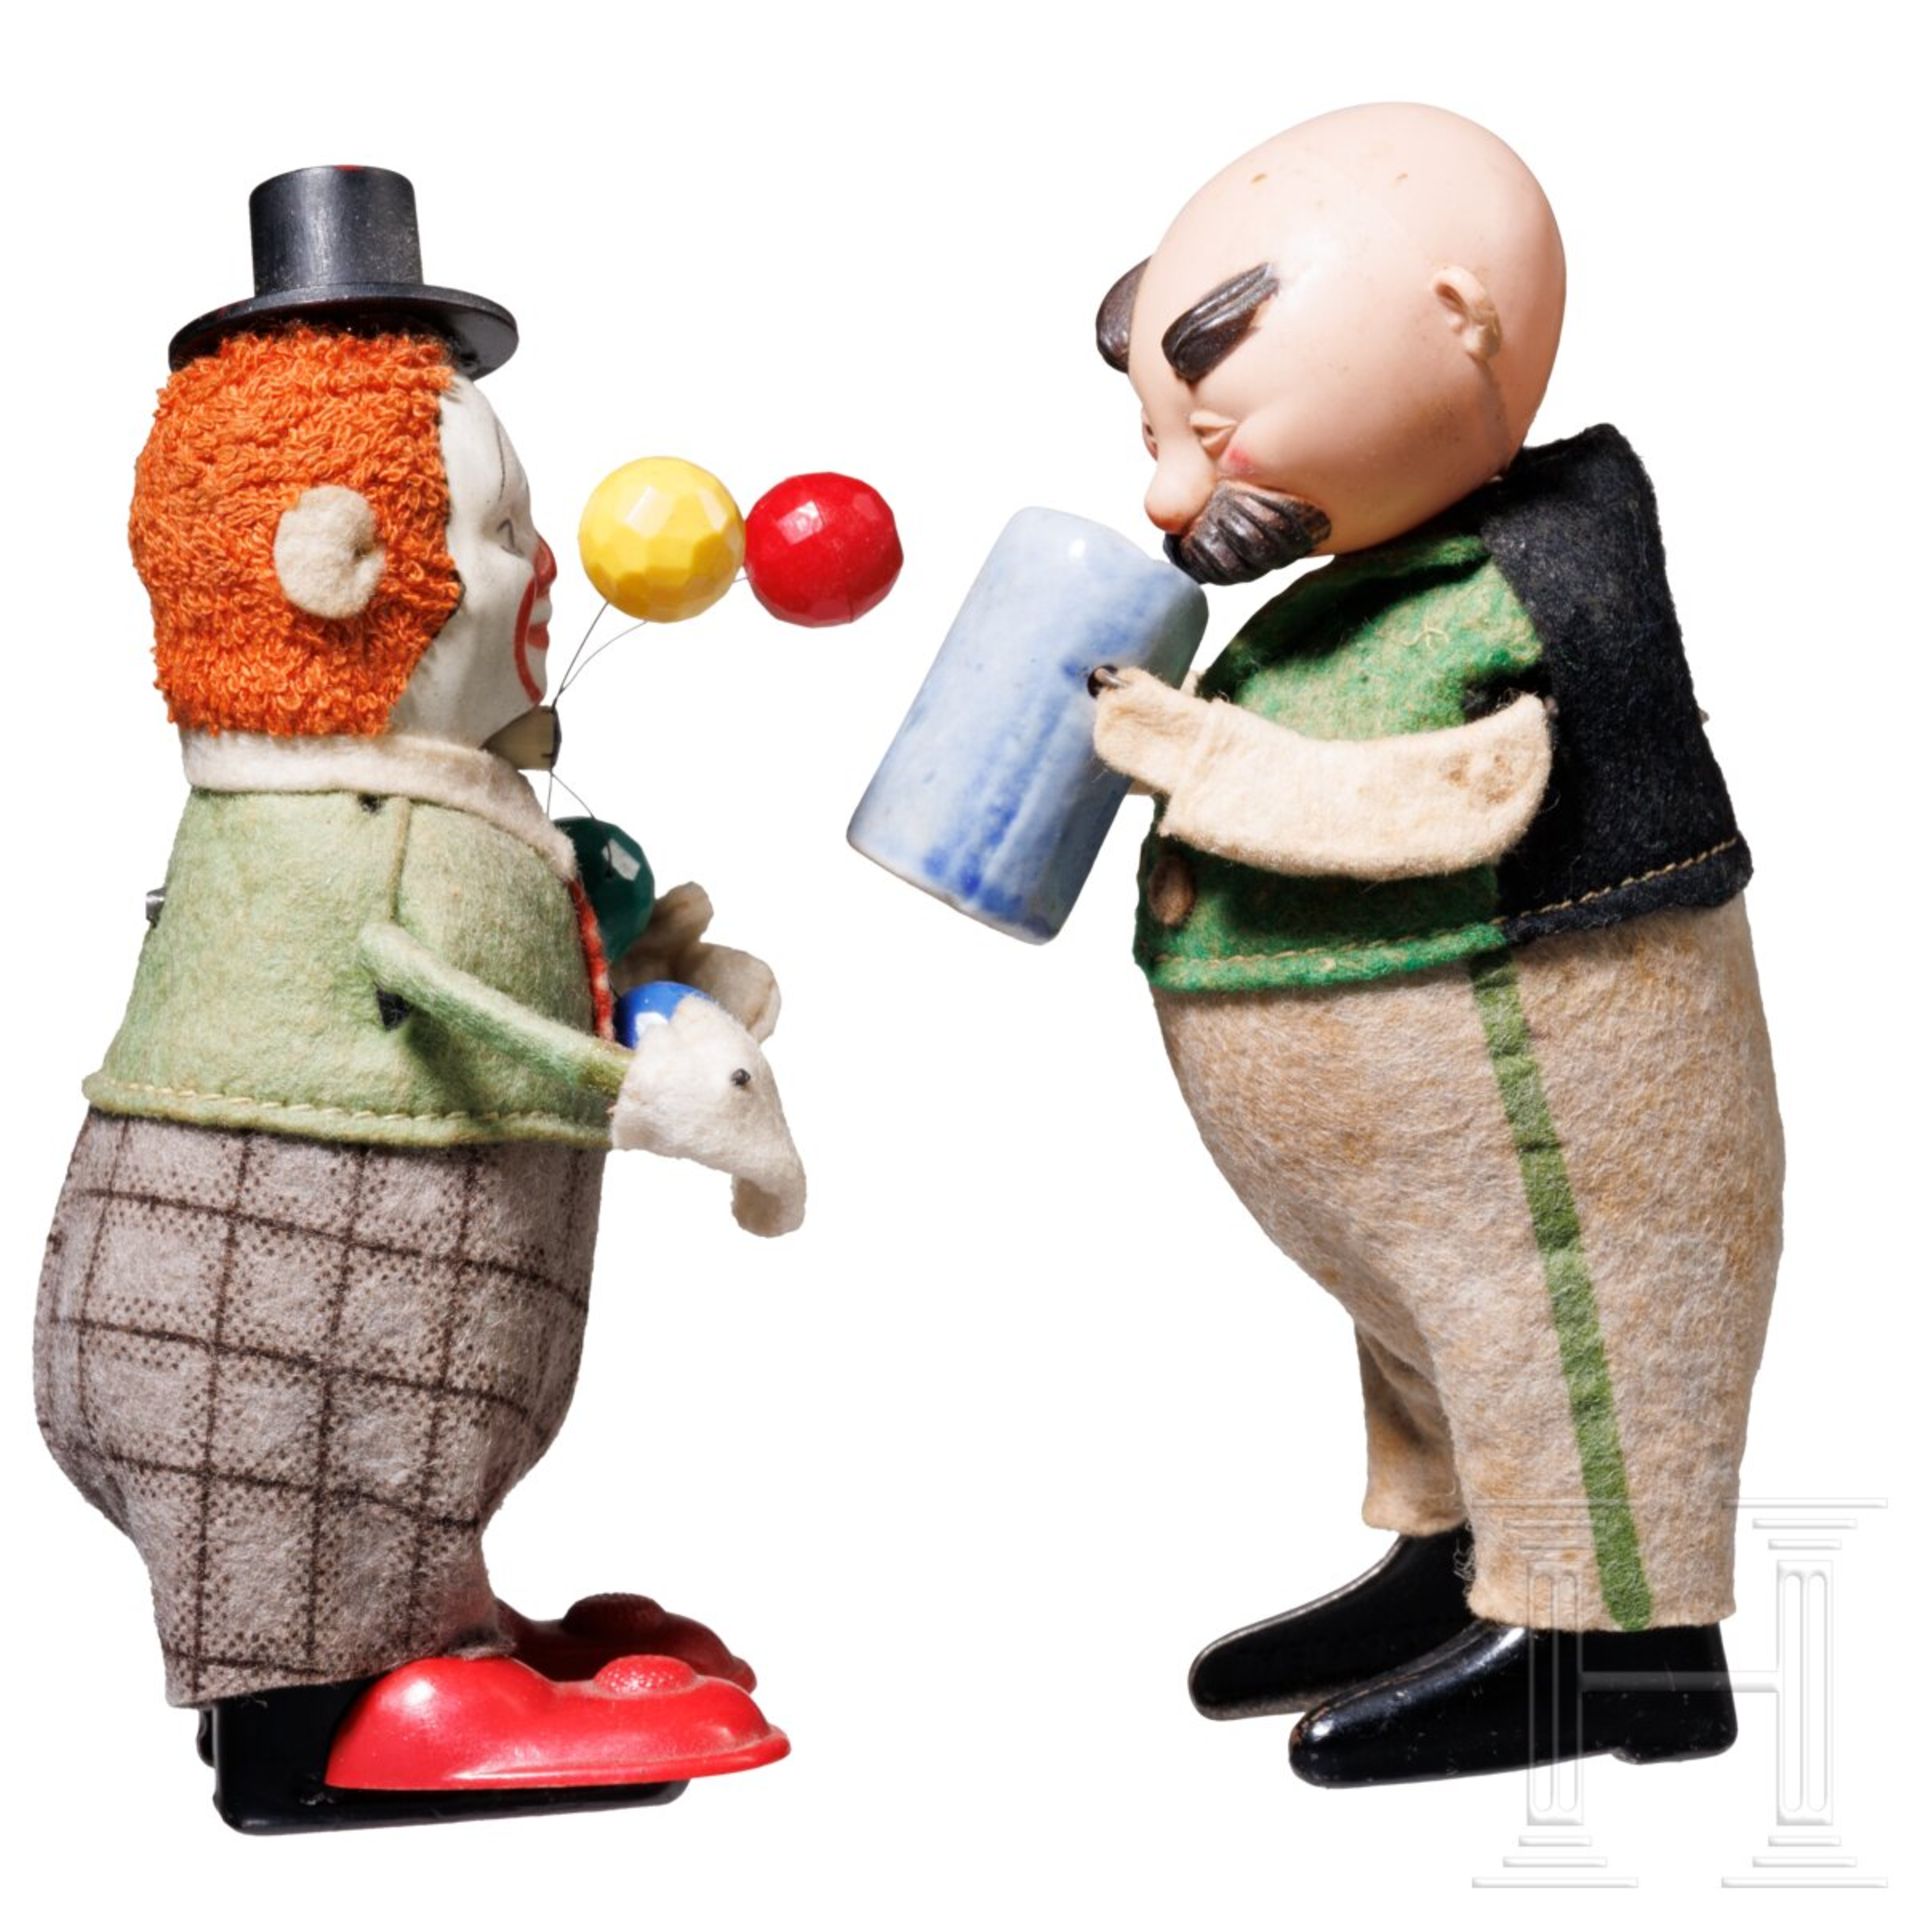 Zwei Schuco-Tanzfiguren - Trachtenfigur "Vater mit Bierkrug" sowie Clown als Jongleur - Image 3 of 5